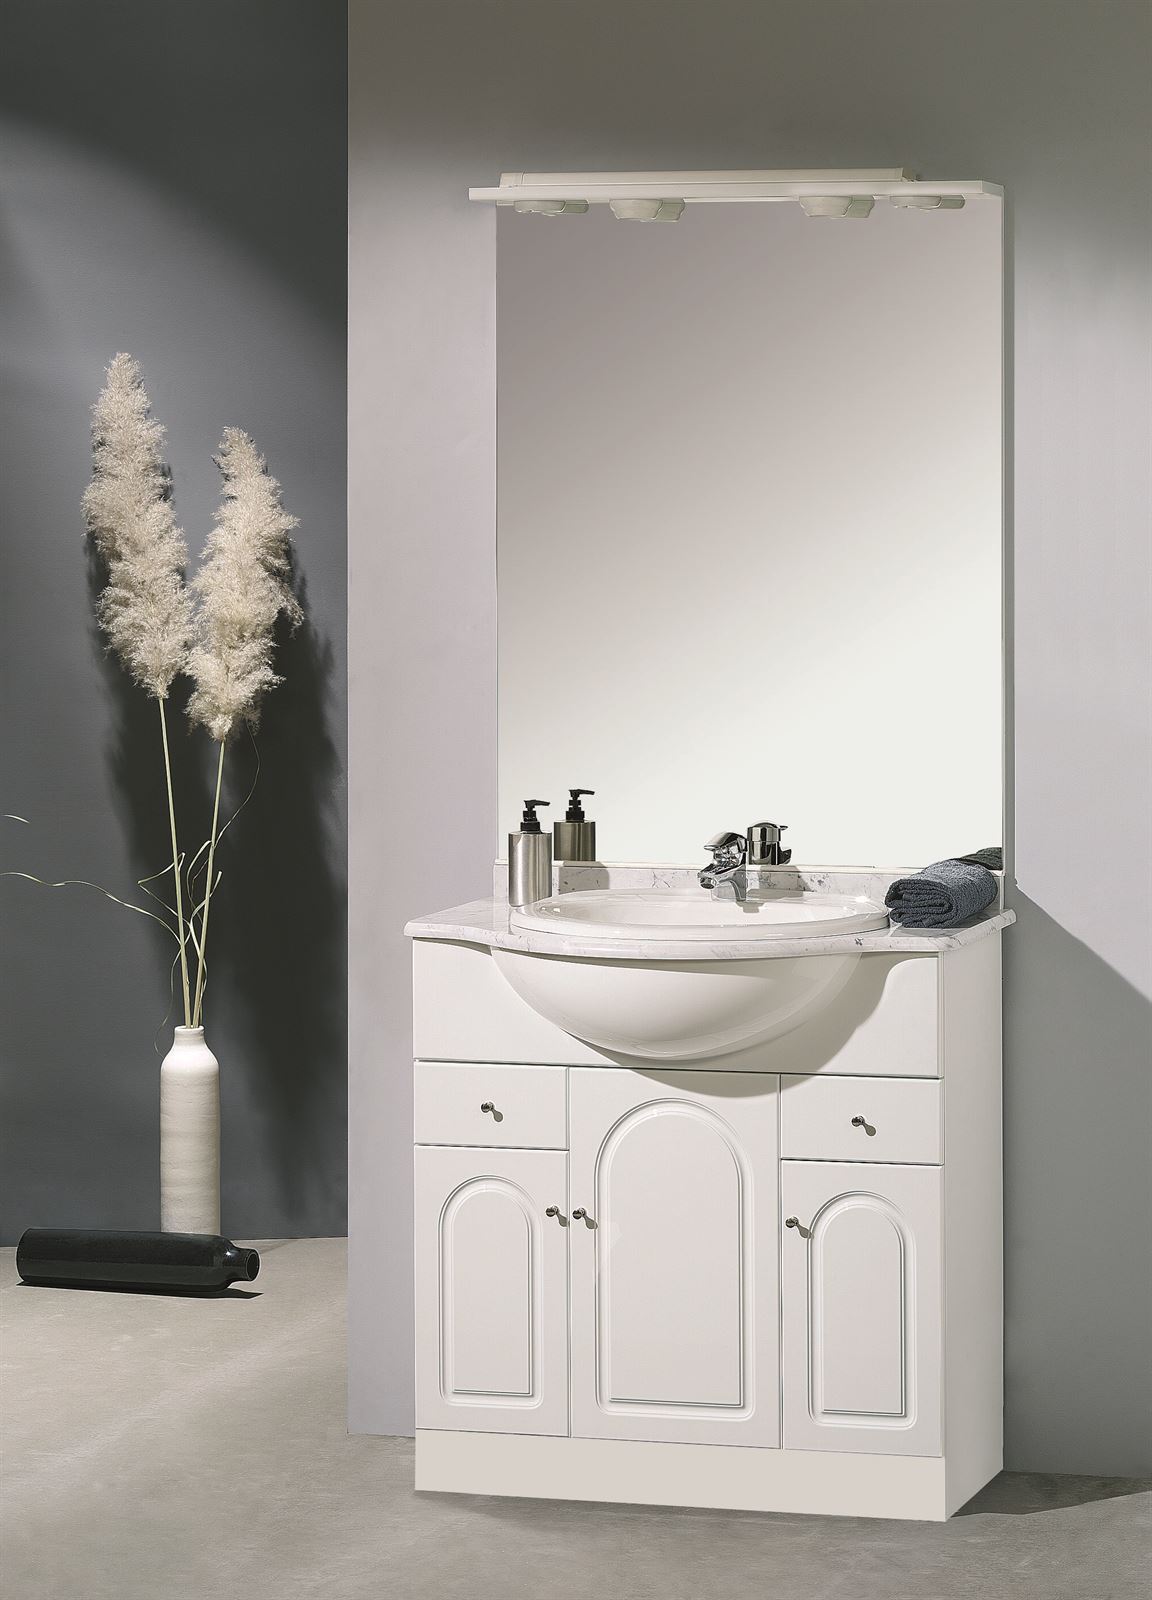 Mueble de baño con lavabo y columnas, 80 cm, color natural y